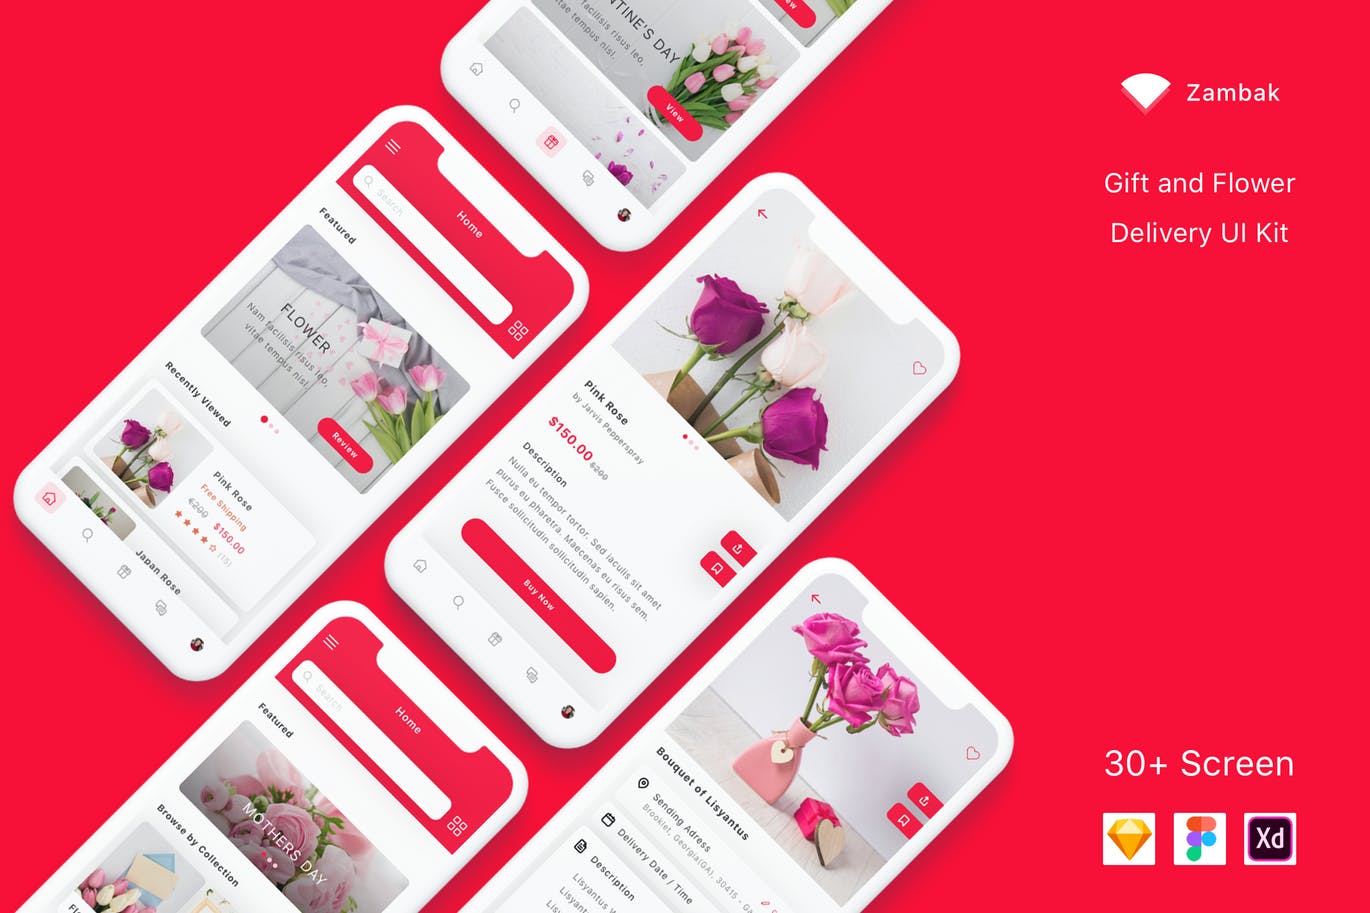 礼品&鲜花预订服务APP应用UI设计第一素材精选套件 Zambak – Gift and Flower Delivery App UI Kit插图